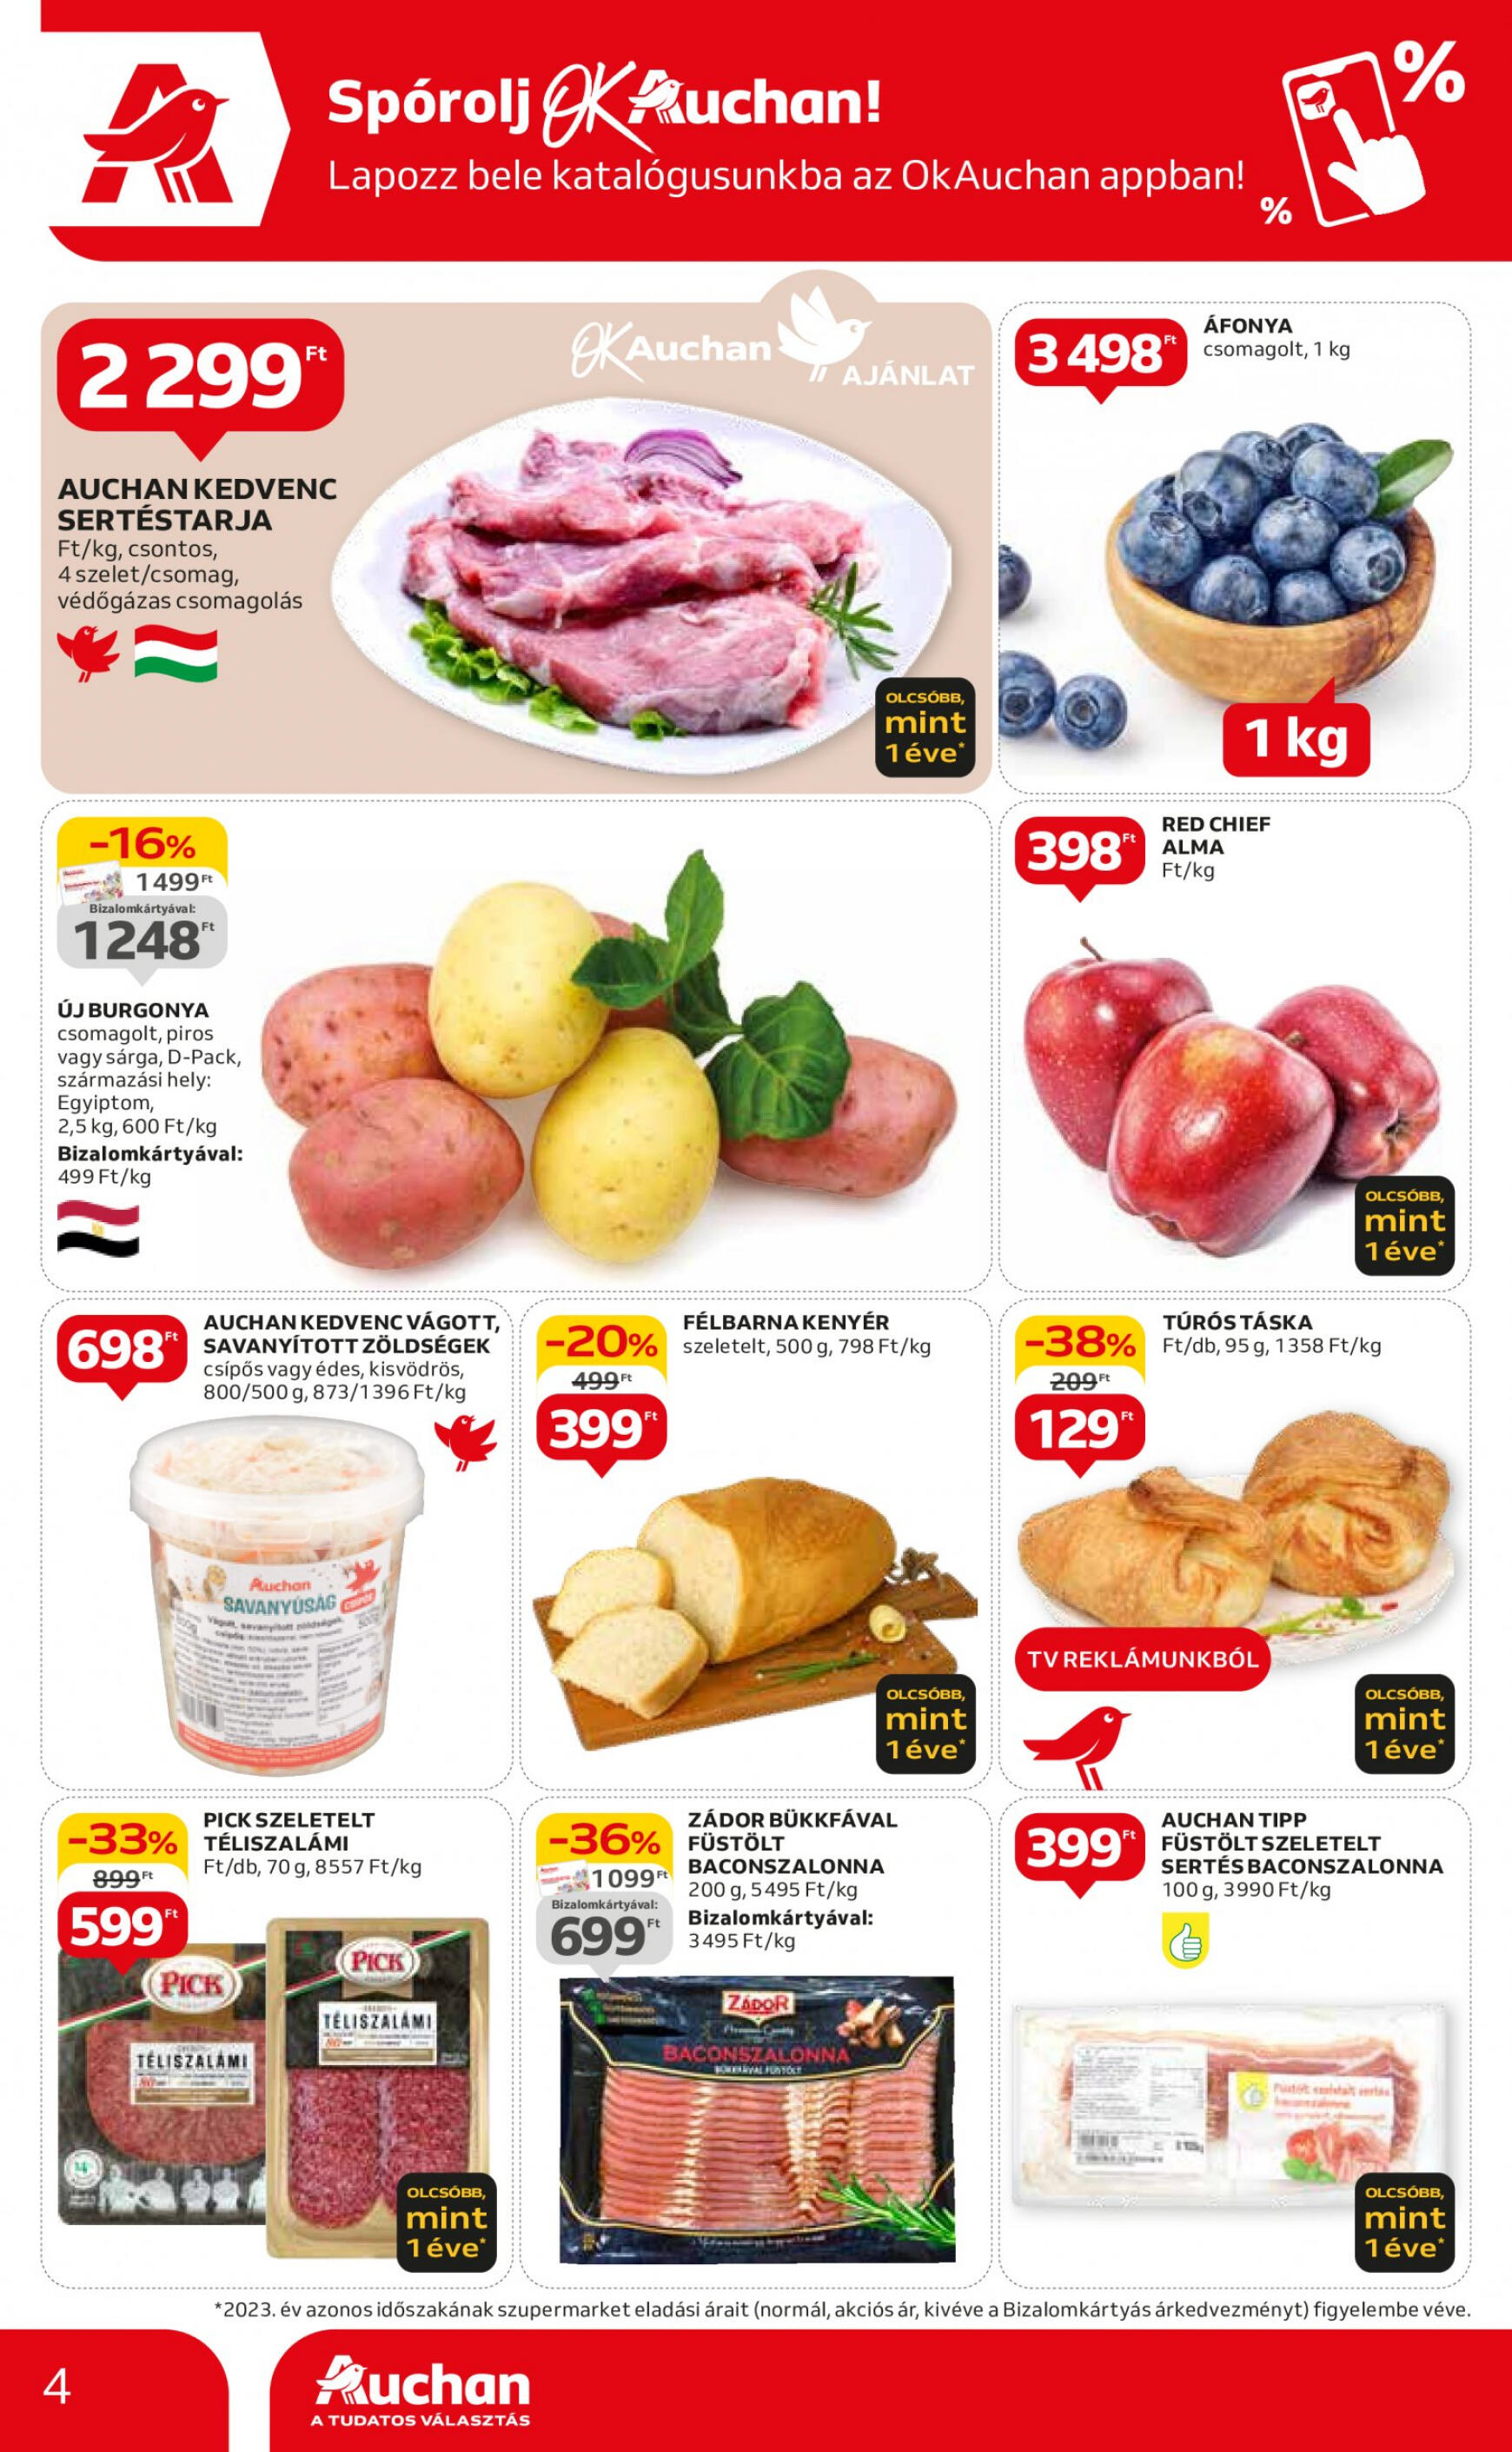 auchan - Aktuális újság Auchan szupermarket 04.25. - 05.30. - page: 4